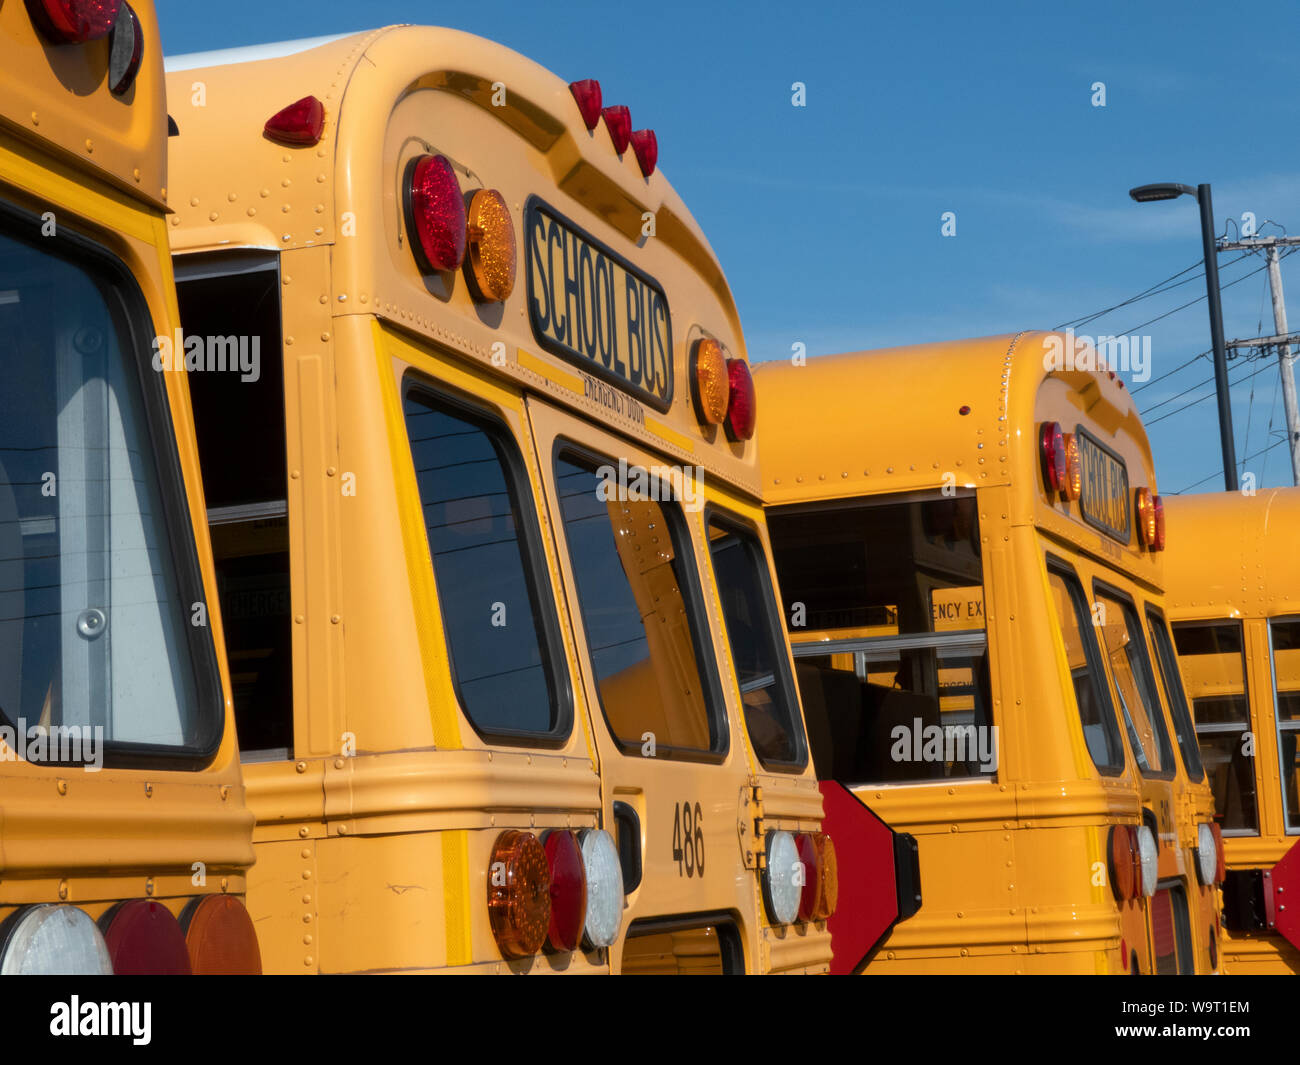 Les autobus scolaires garés sur le lot. Banque D'Images